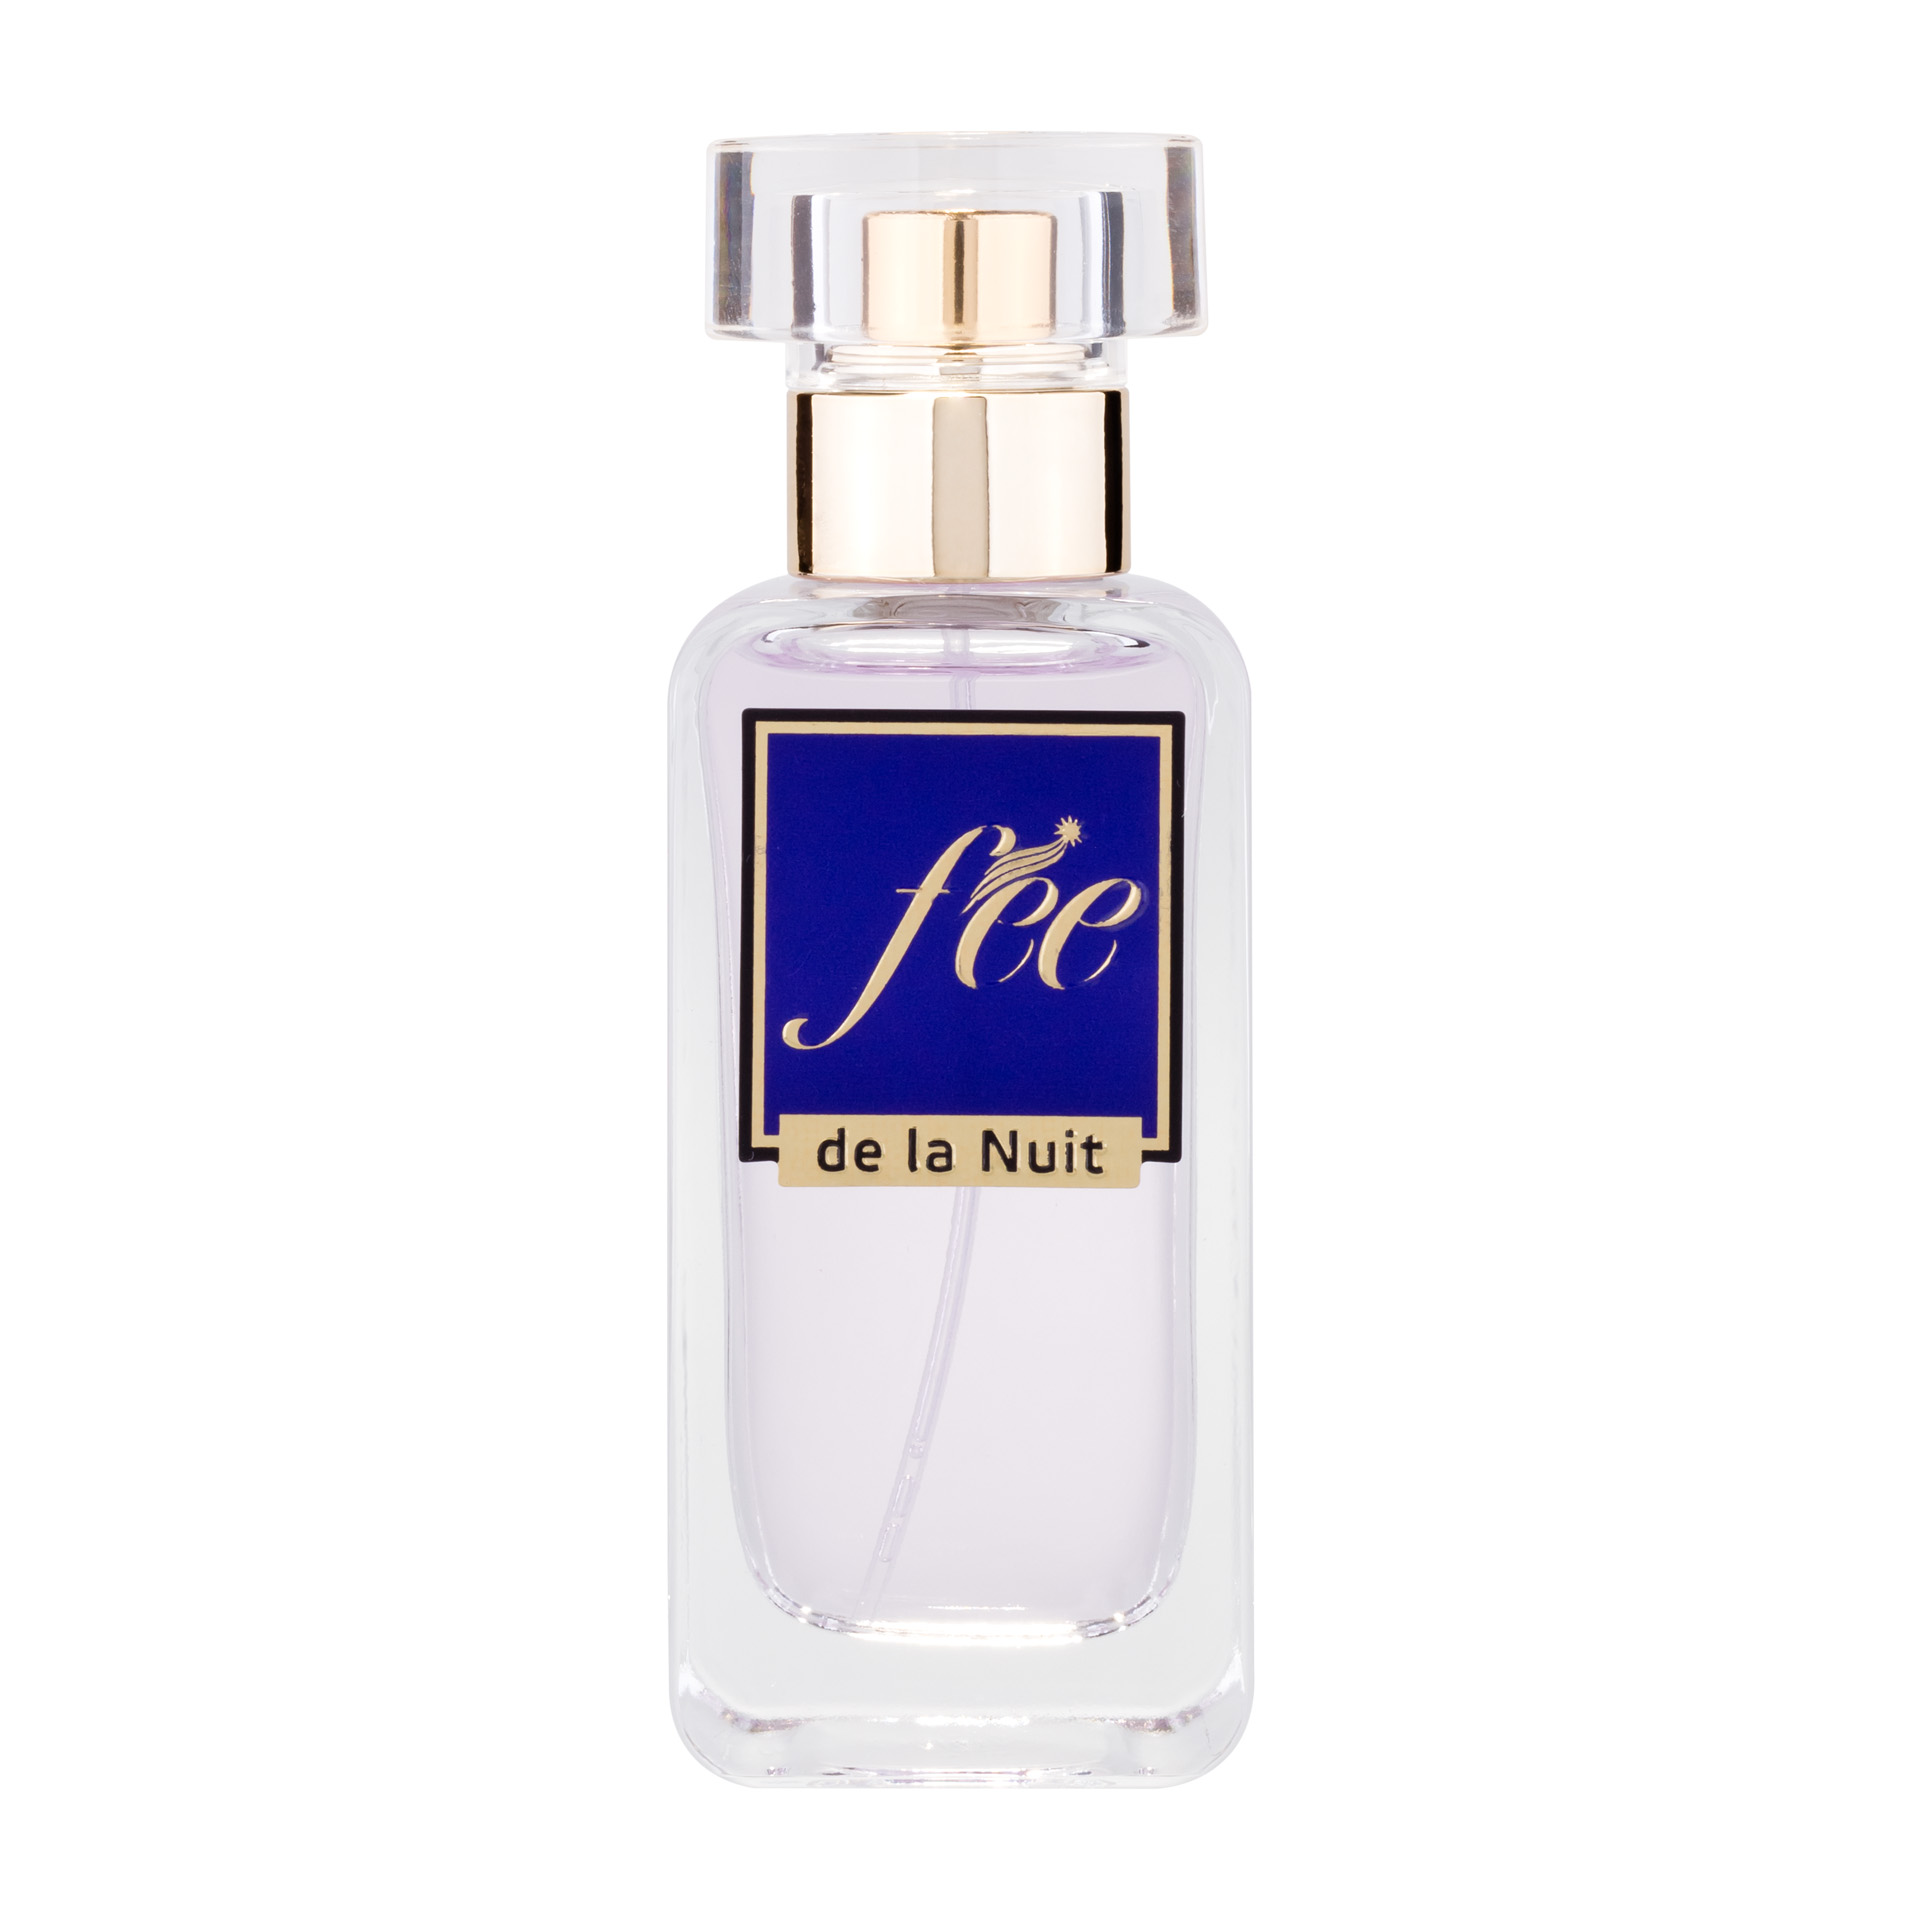 Купить Парфюмерная вода Fee Fée de la Nuit Eau de Parfum, 30 мл